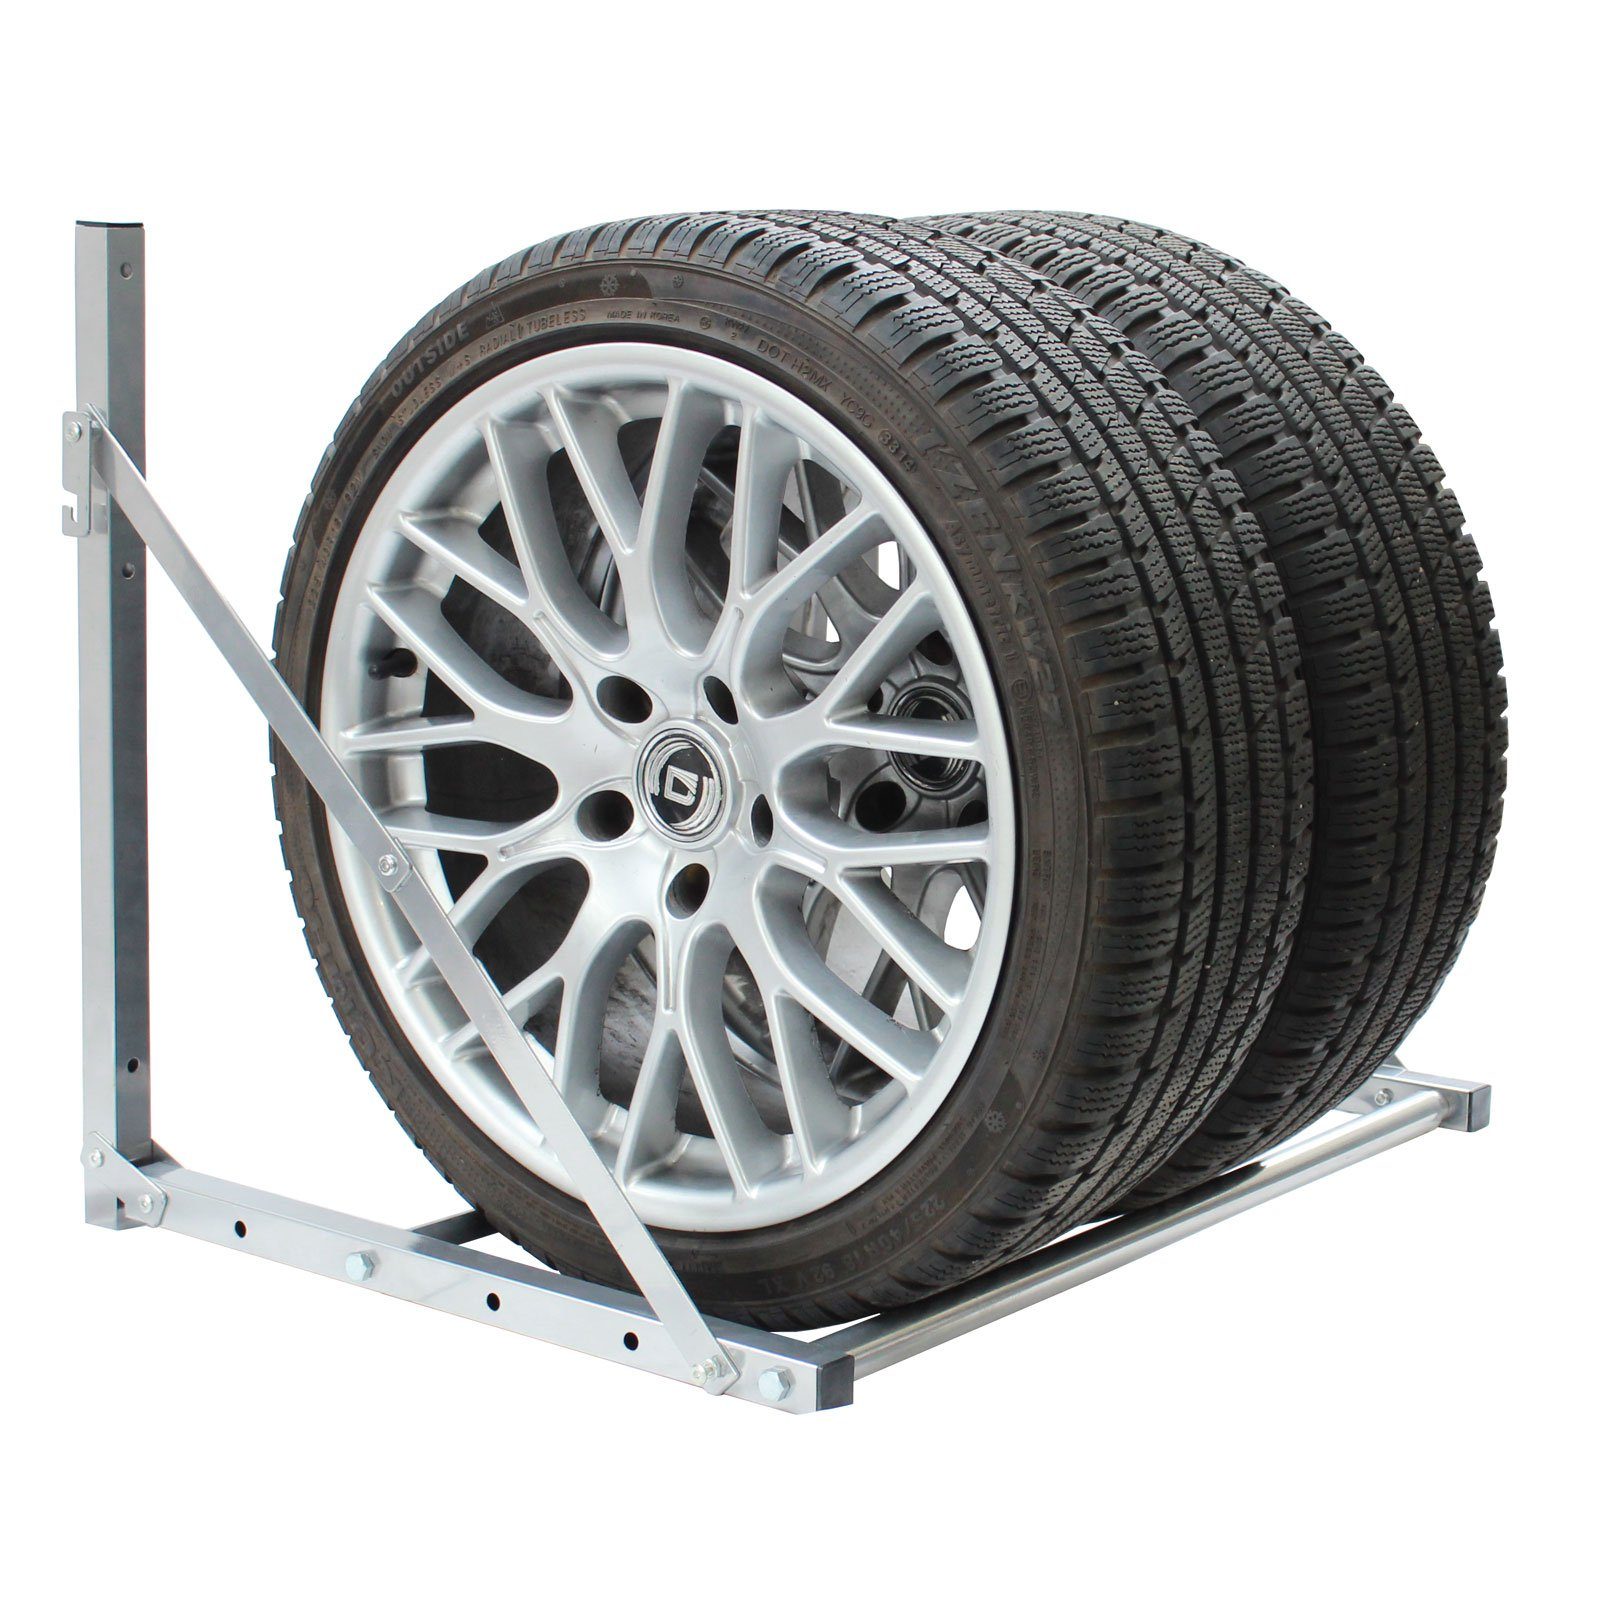 Räder Wandregal Reifenwandhalterung 4 kg ausziehbar 136 Traglast TRUTZHOLM für